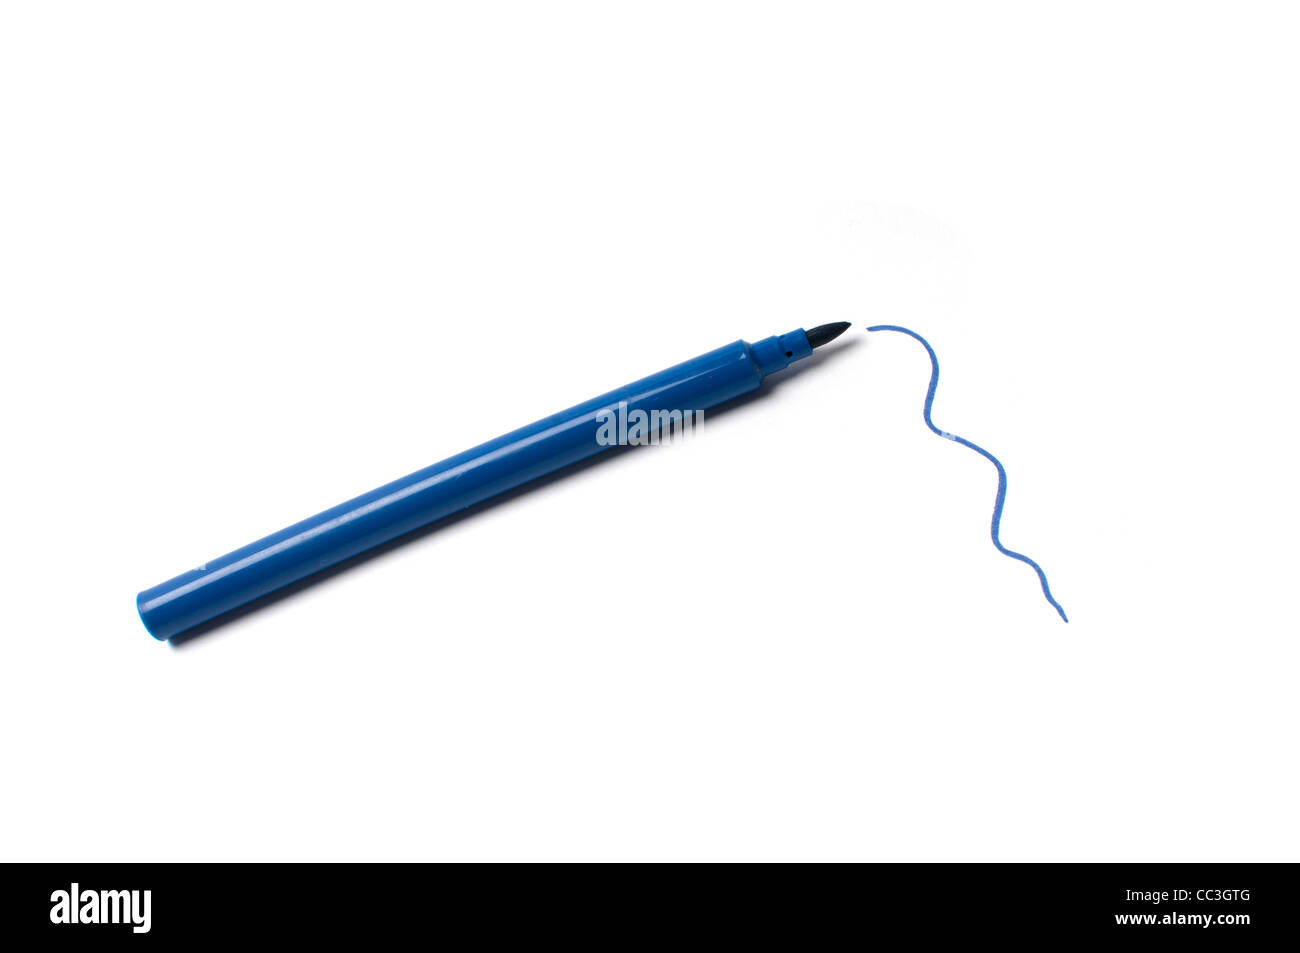 A blue felt tip pen Stock Photo